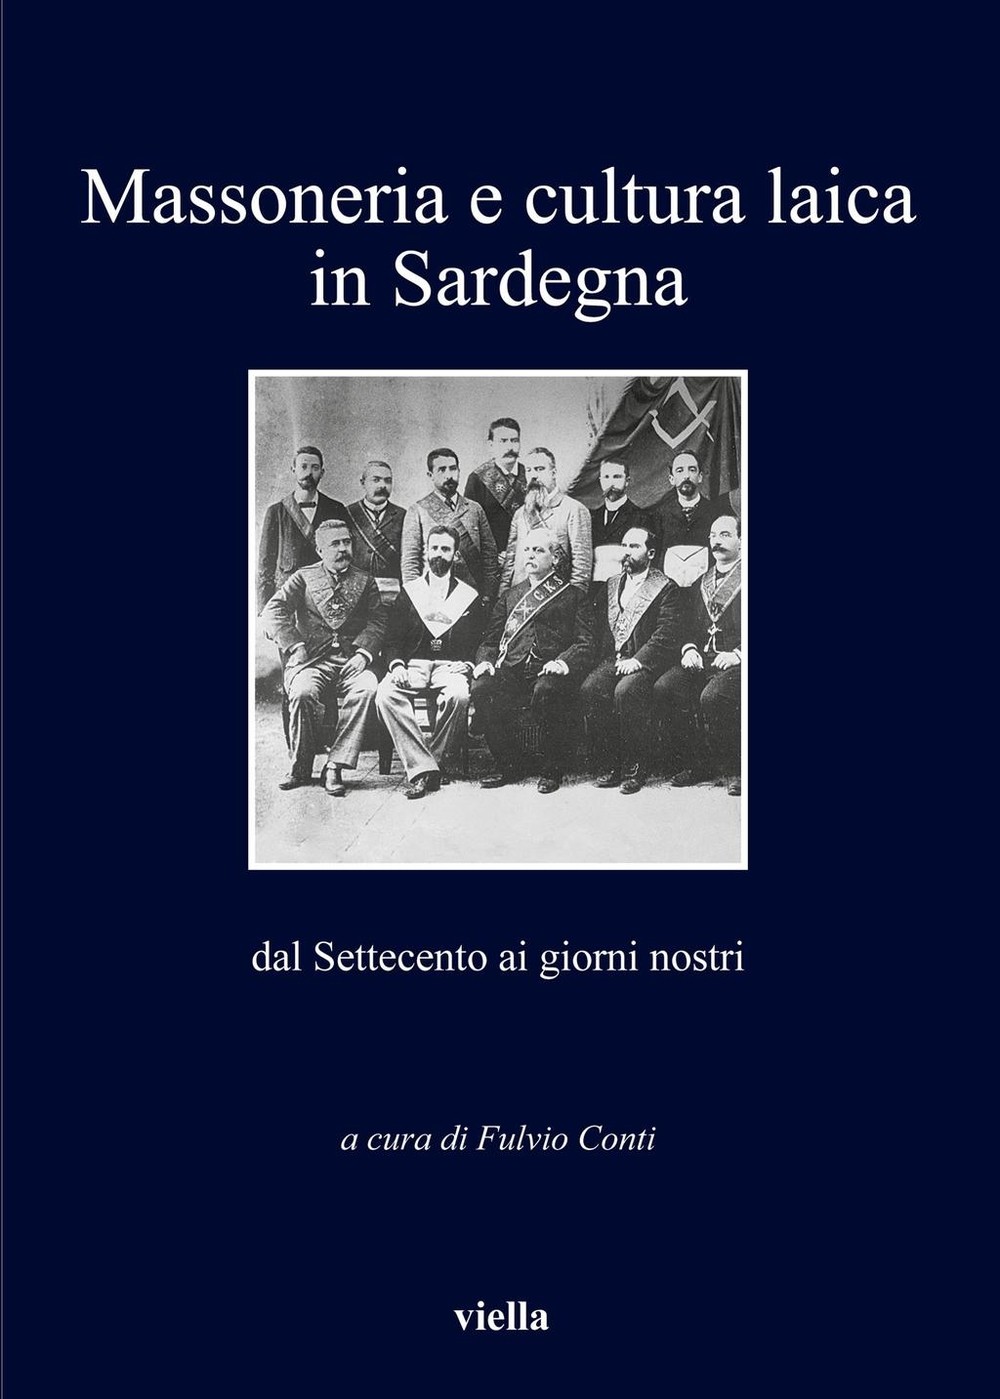 Massoneria e cultura laica in Sardegna dal Settecento ai giorni nostri - Librerie.coop